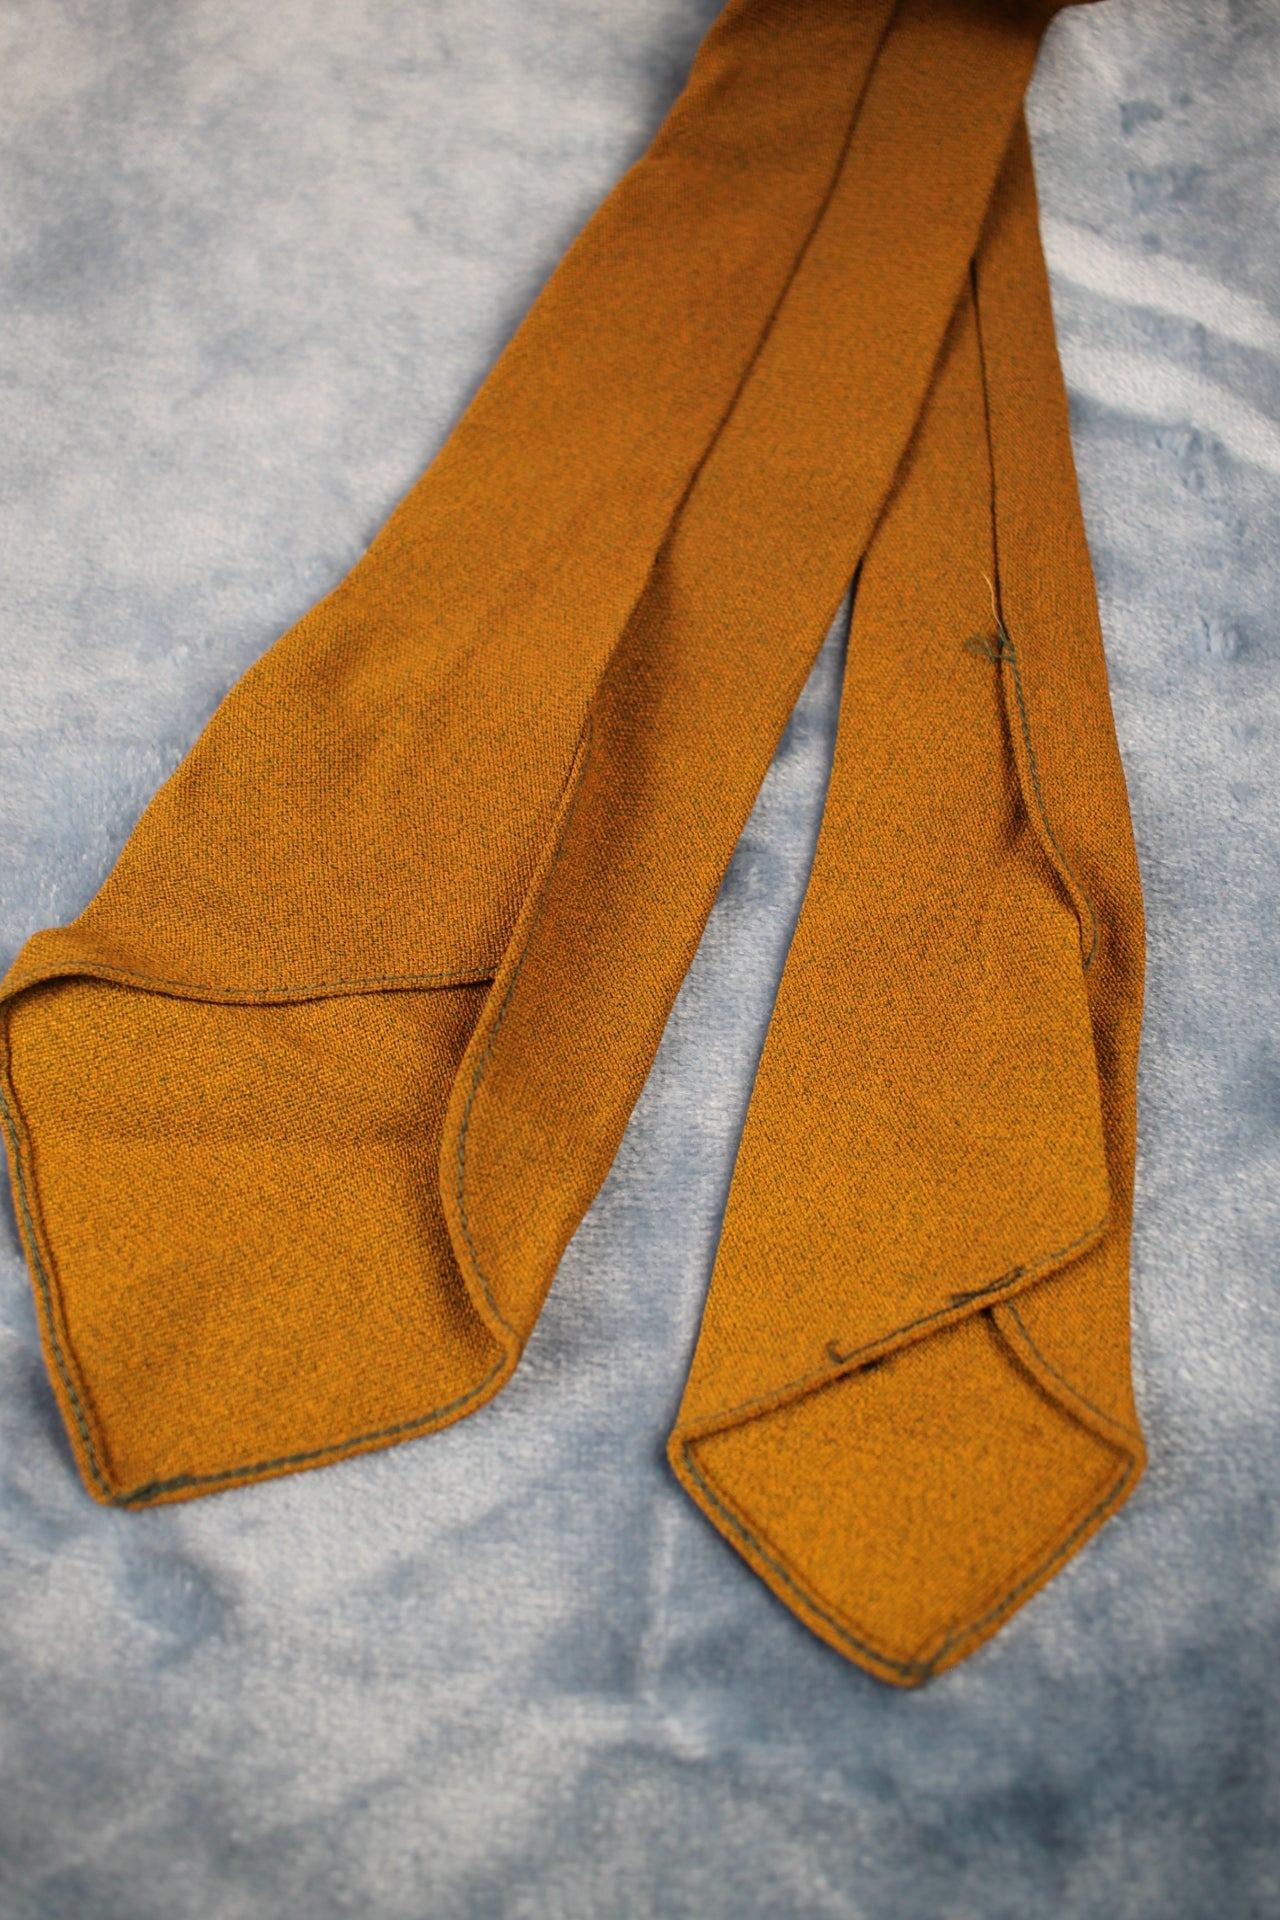 Vintage 1940s/50s khaki tan speckled unlined swing tie